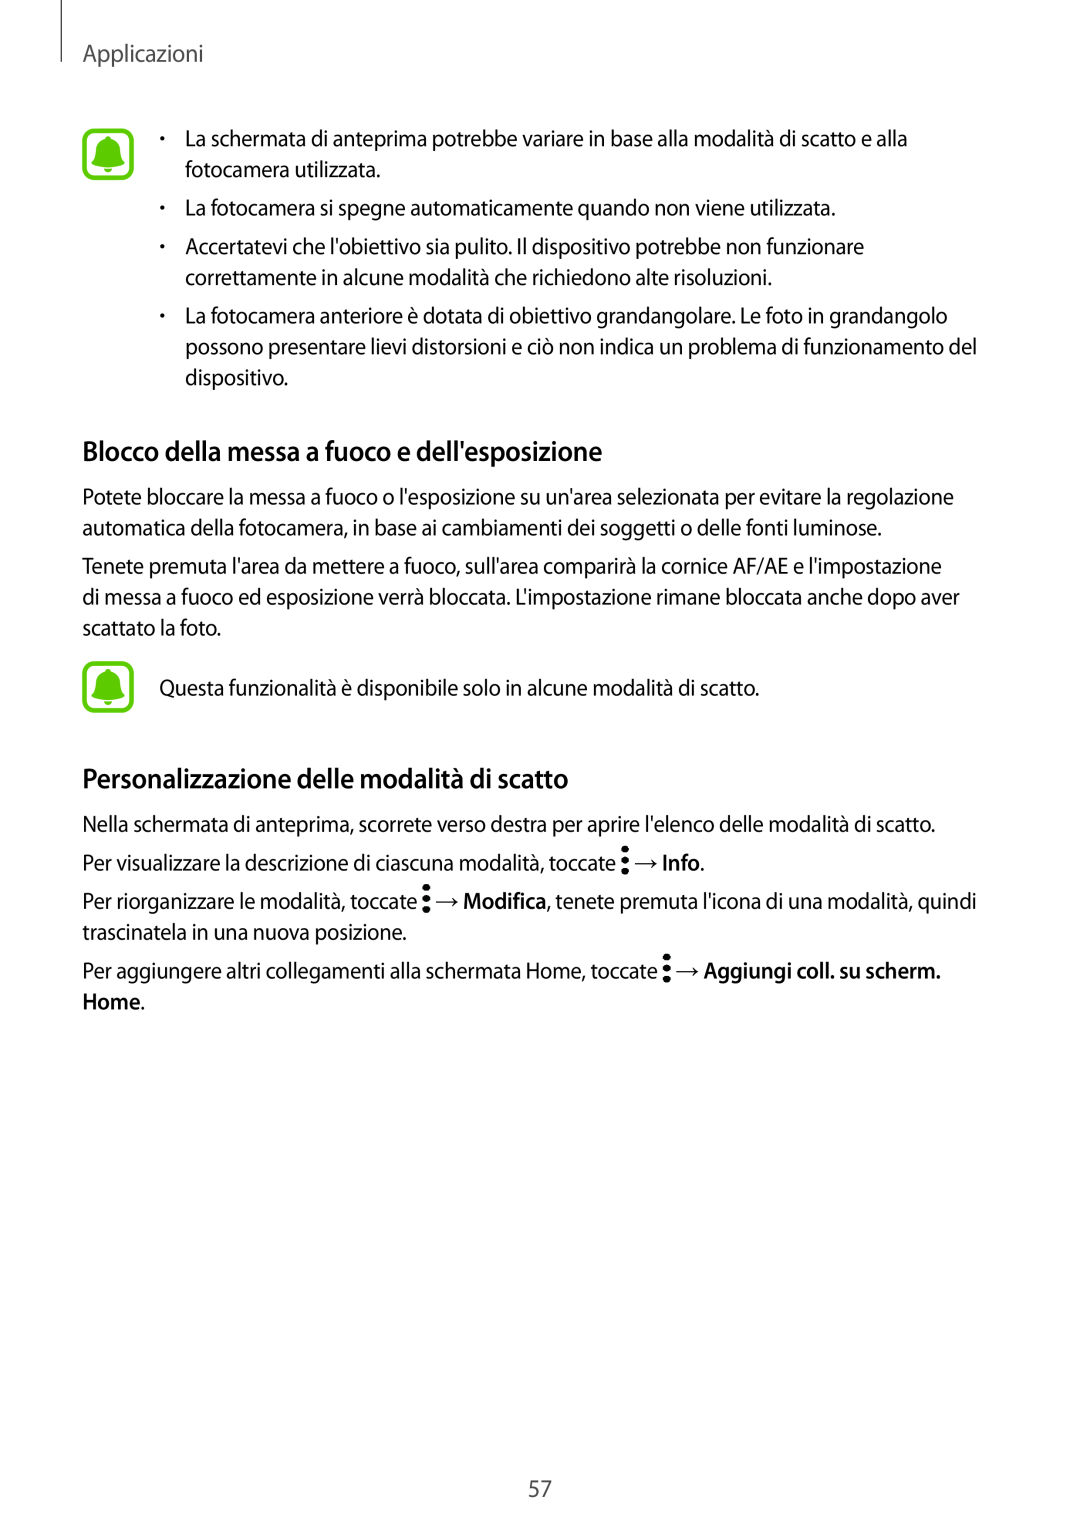 Samsung SM-T810NZKEAUT manual Blocco della messa a fuoco e dellesposizione, Personalizzazione delle modalità di scatto 